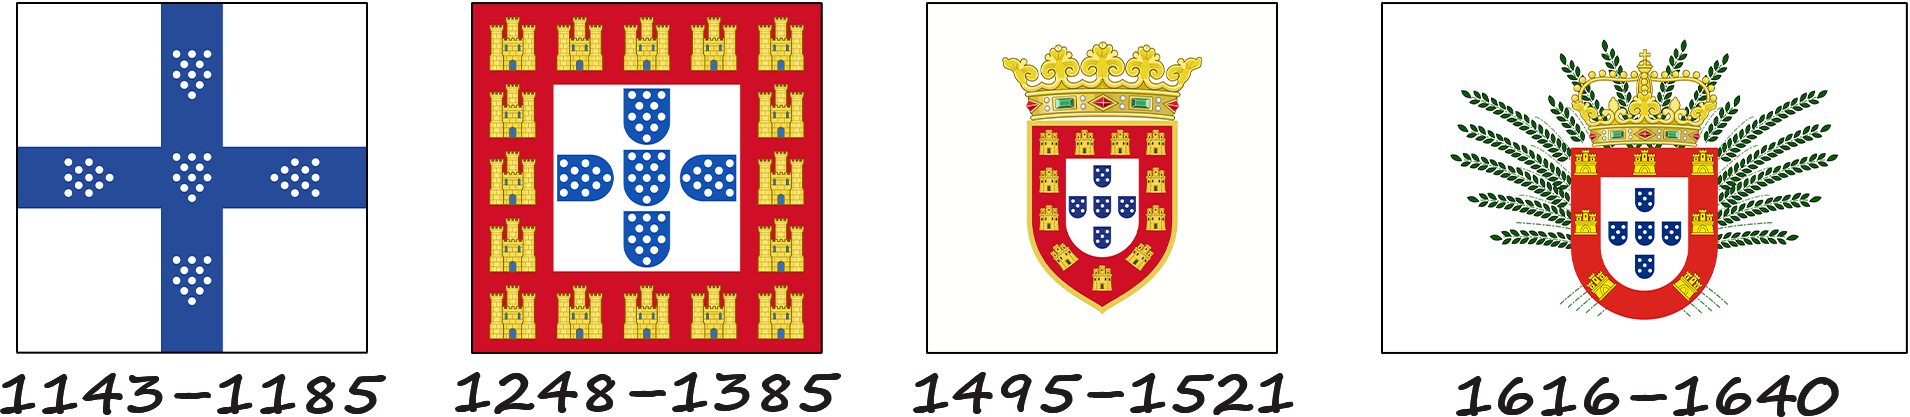 Histoire du drapeau portugais